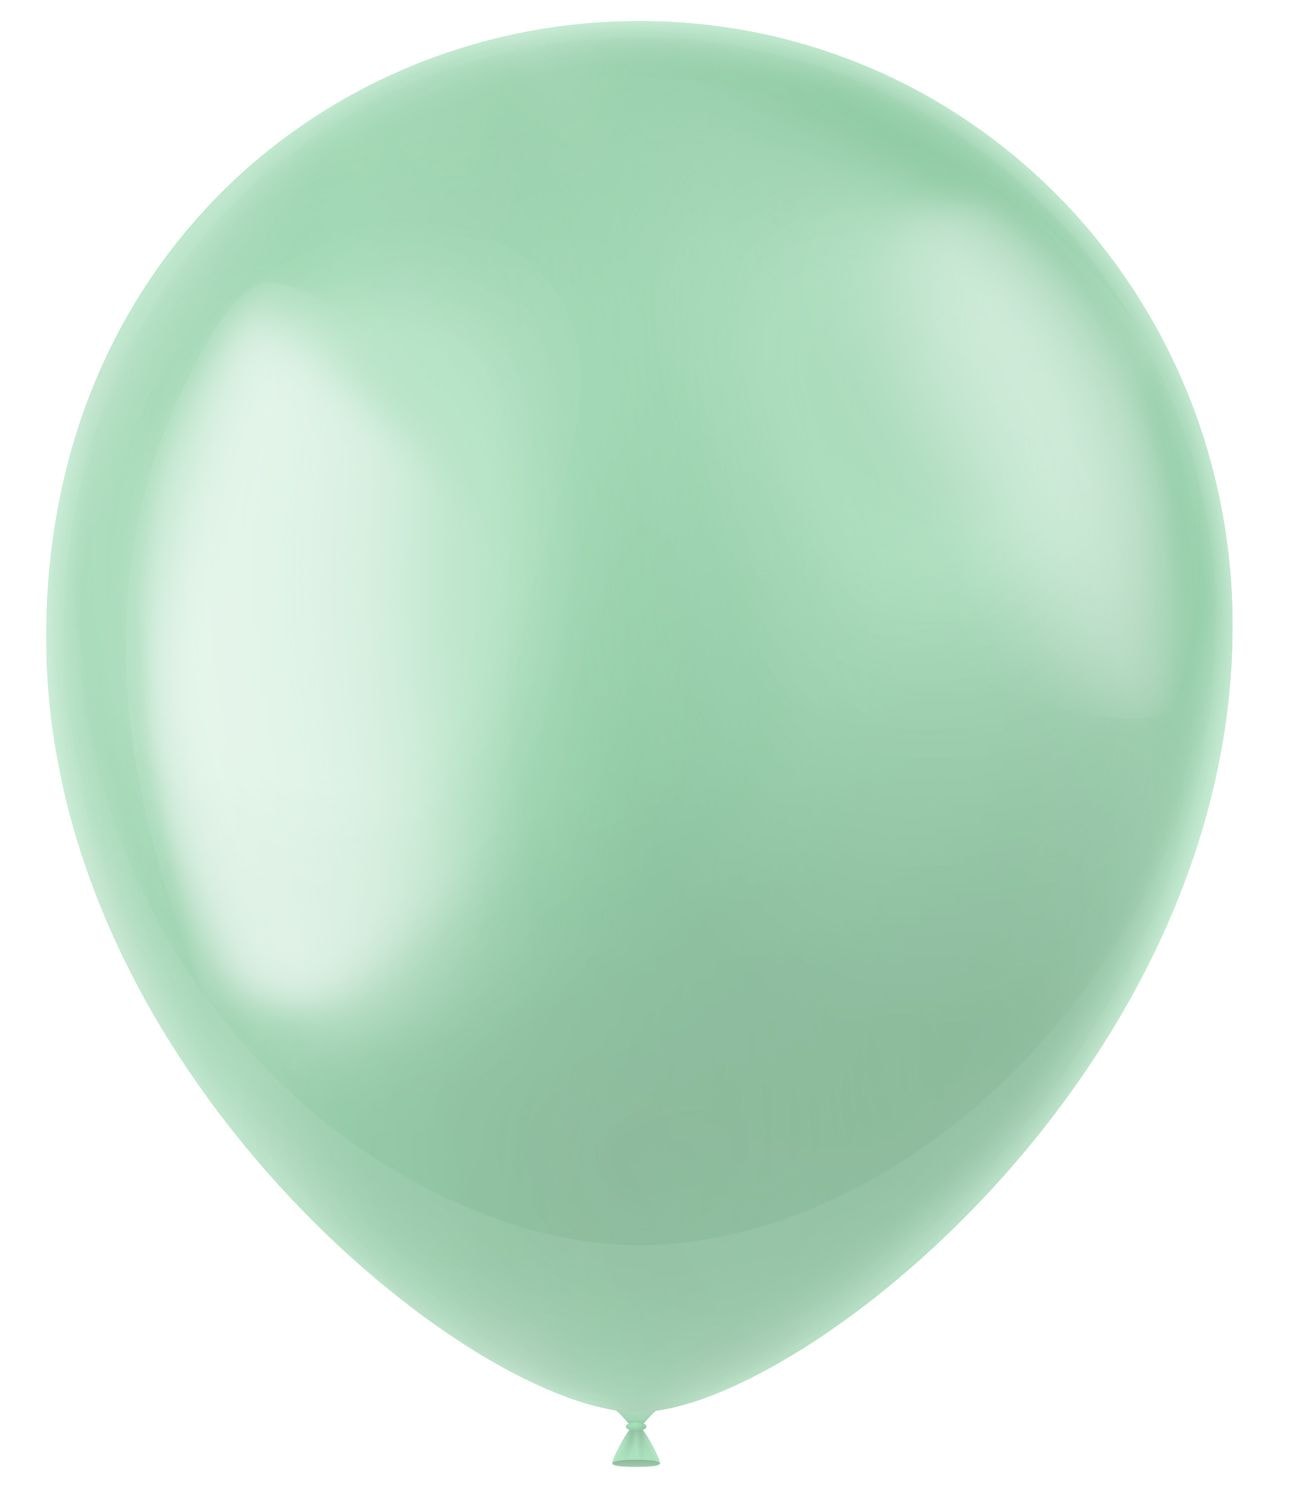 Minty groene metallic ballonnen 100 stuks